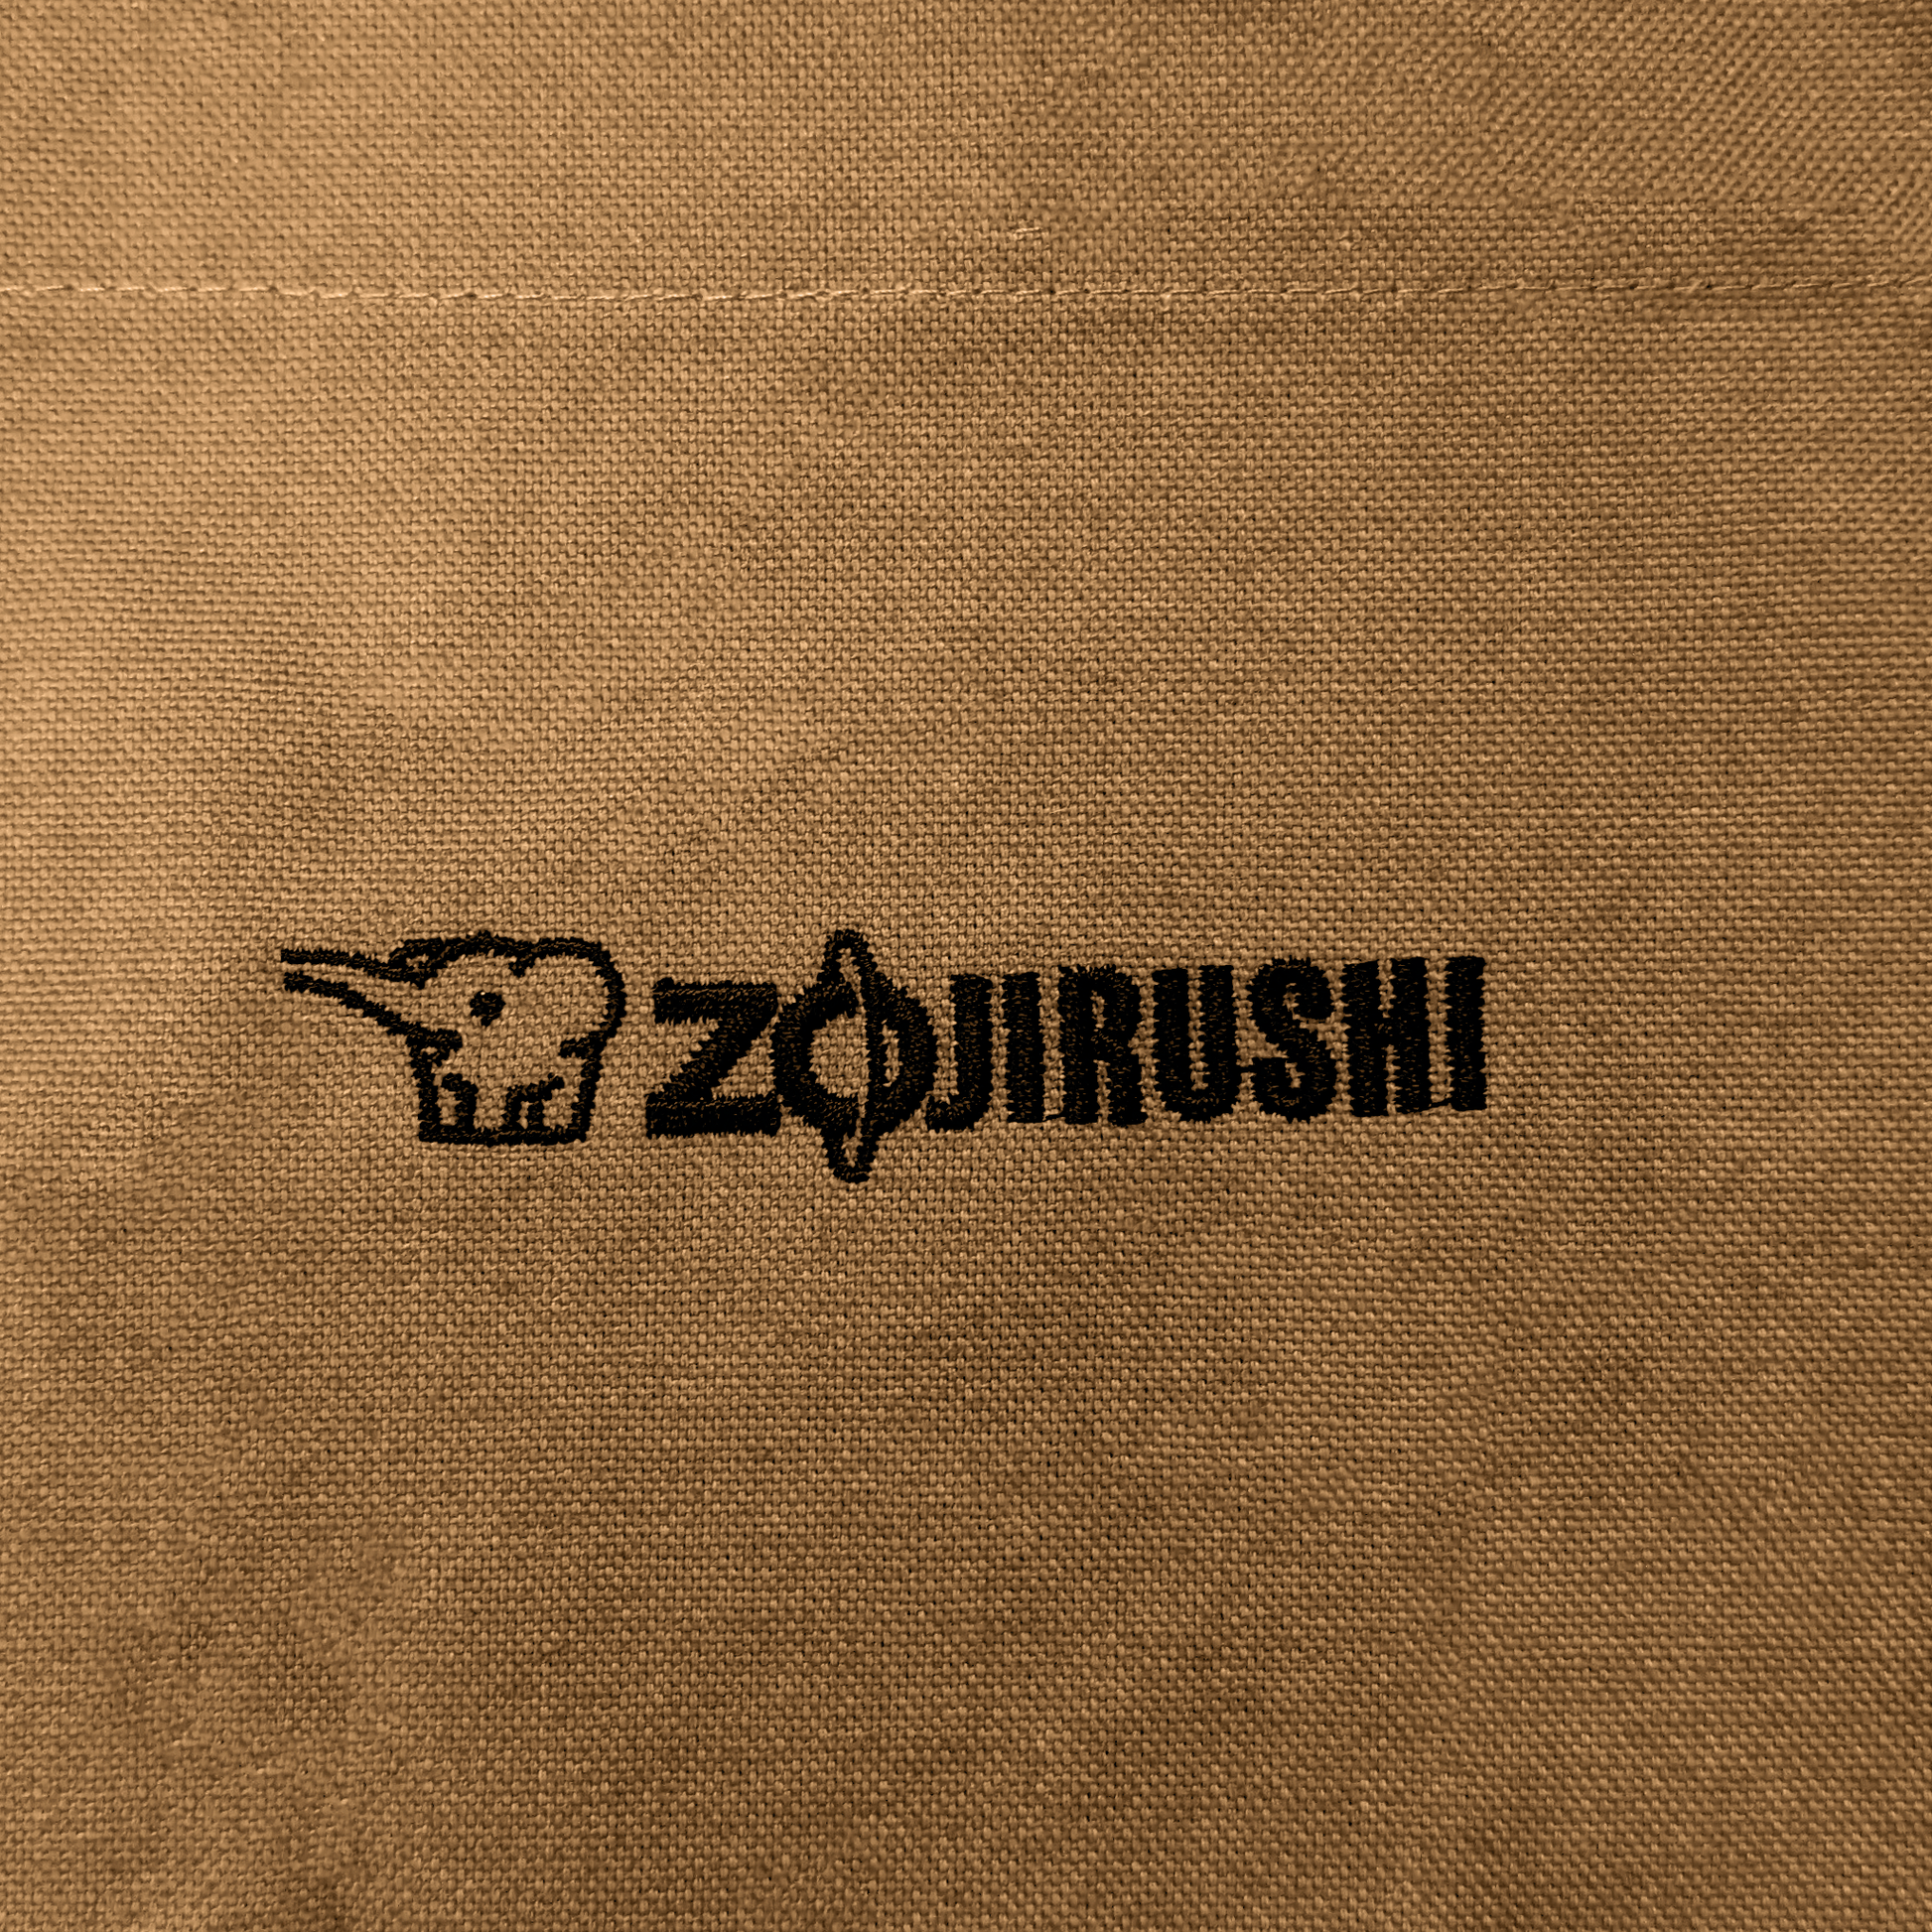 Zojirushi Grilling Apron Logo